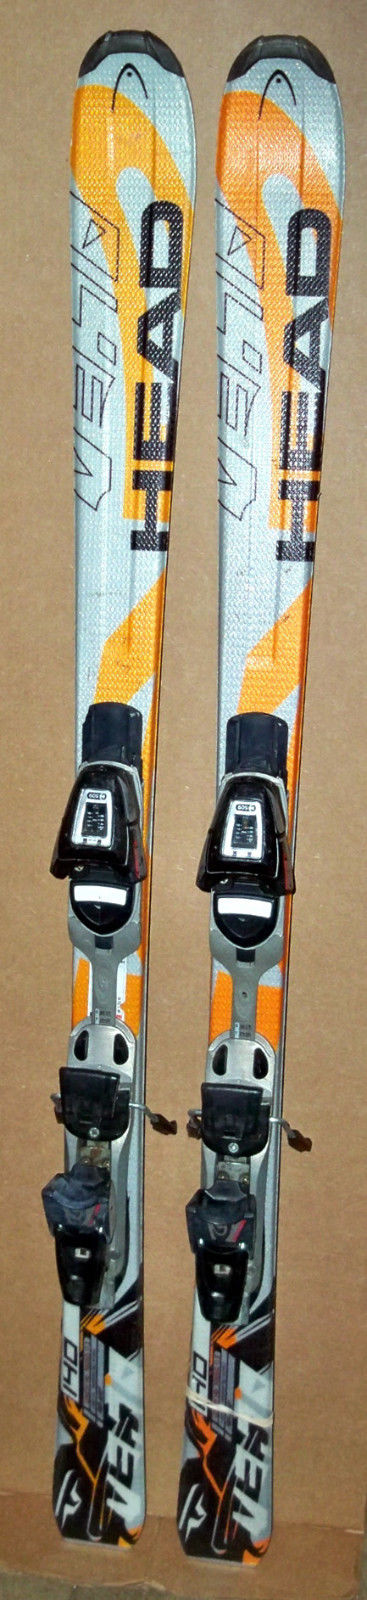 140 cm Head M3.70 skis bindings + women's size 9 ski boots + poles